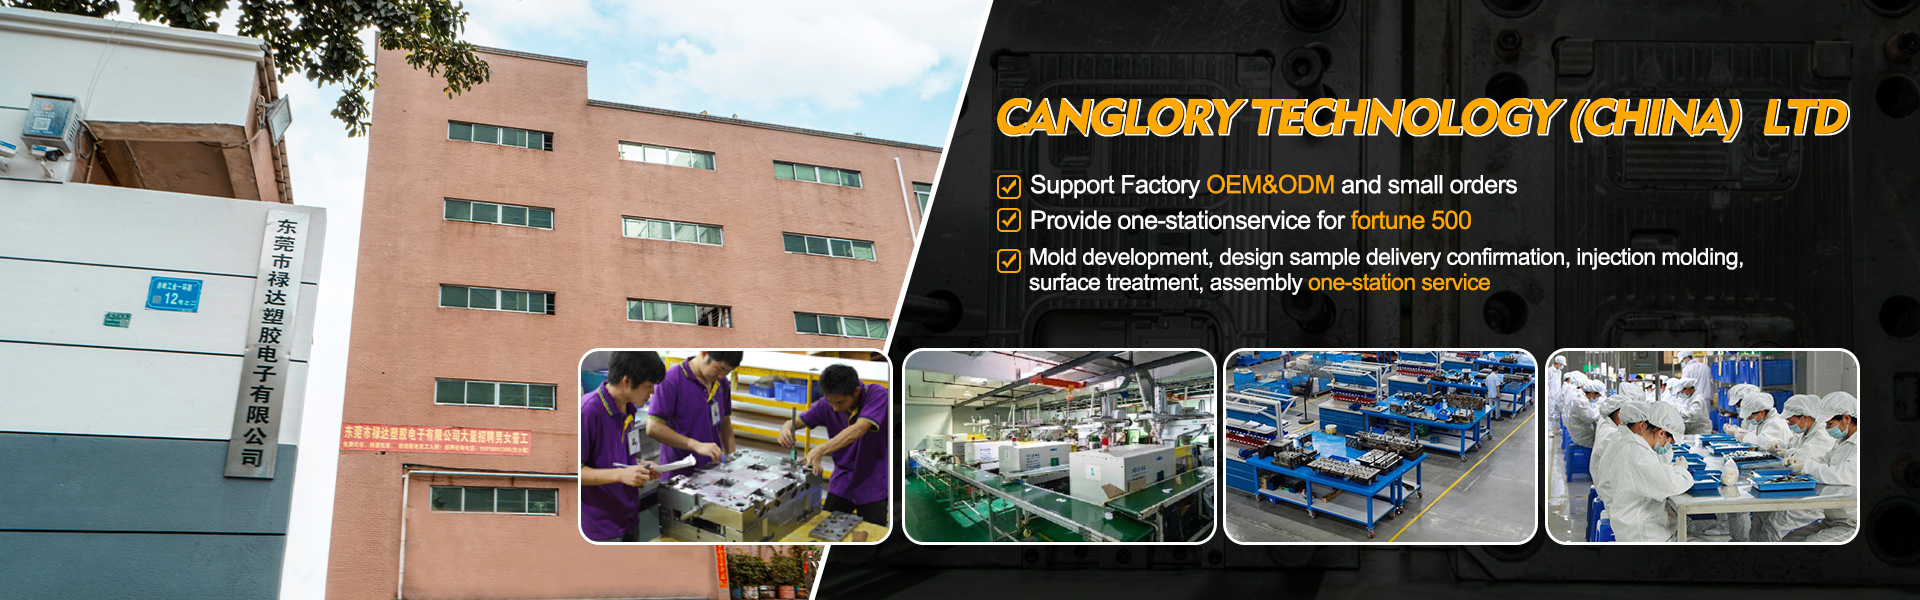 Koti - muovaus, ruiskutus, alkuperäiset laitteiden valmistaja|Canglory Technology (China) Ltd